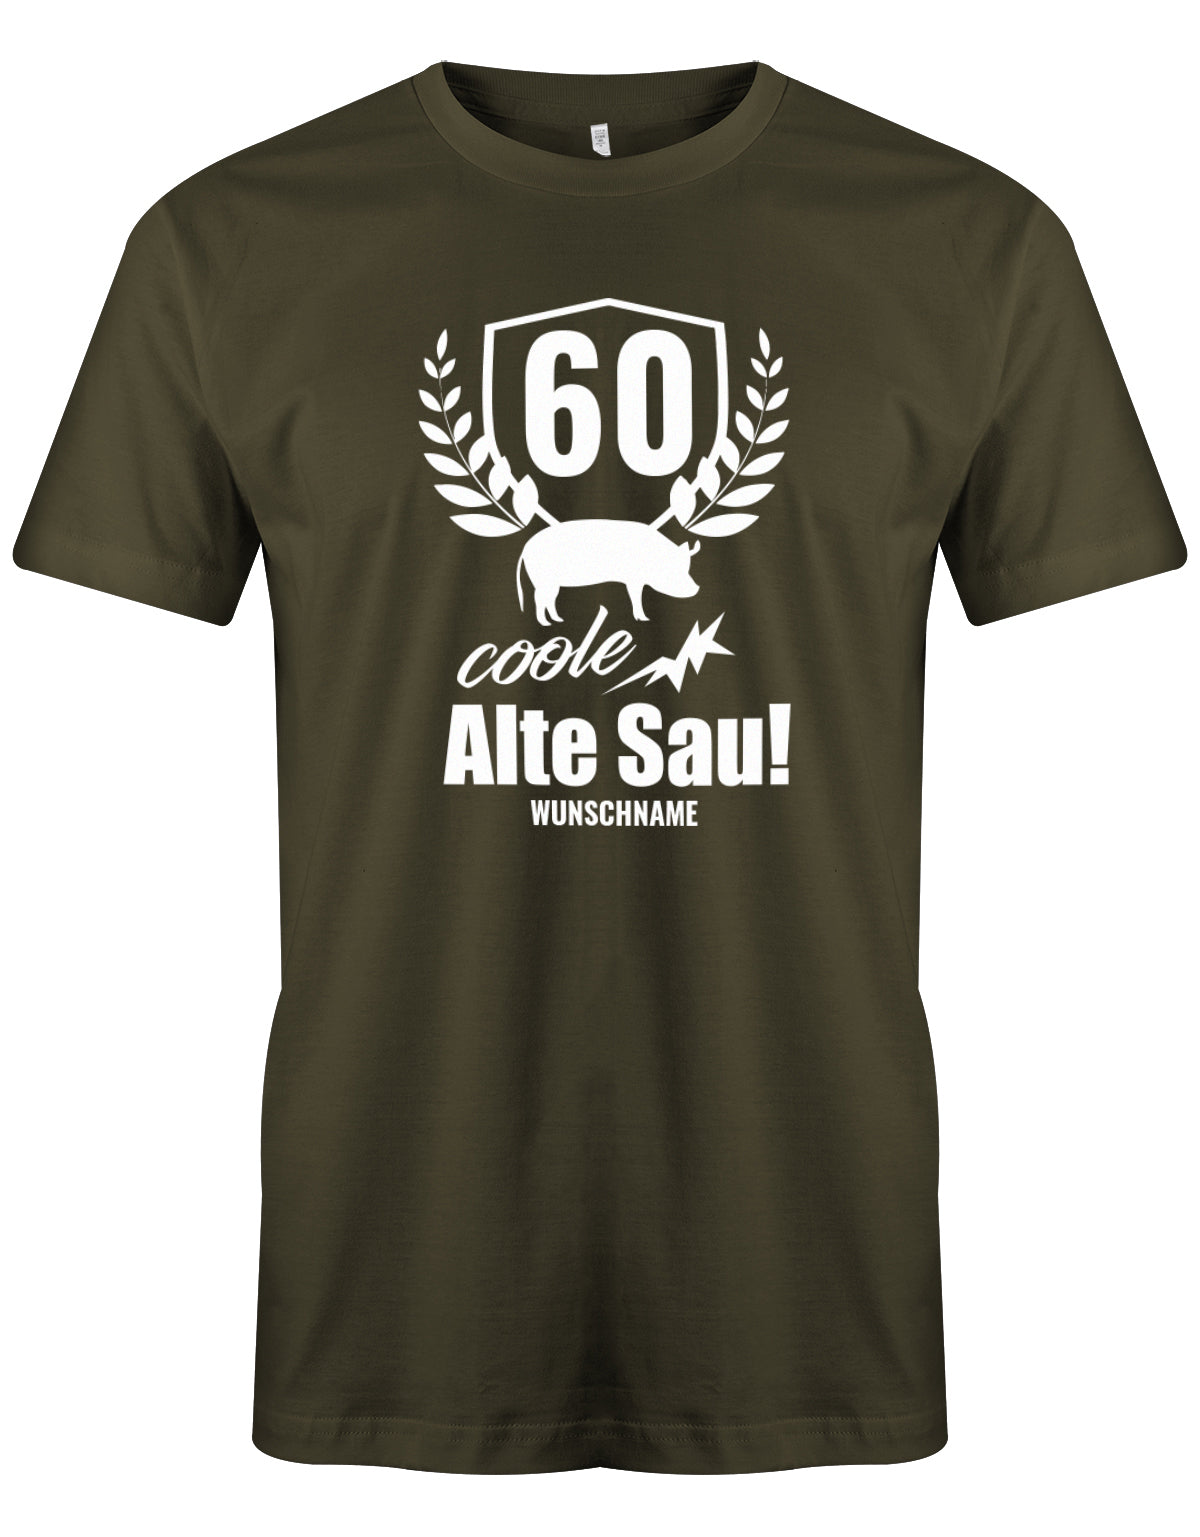 Lustiges T-Shirt zum 60. Geburtstag für den Mann Bedruckt mit 60 coole Alte Sau! mit Wunschname. Army